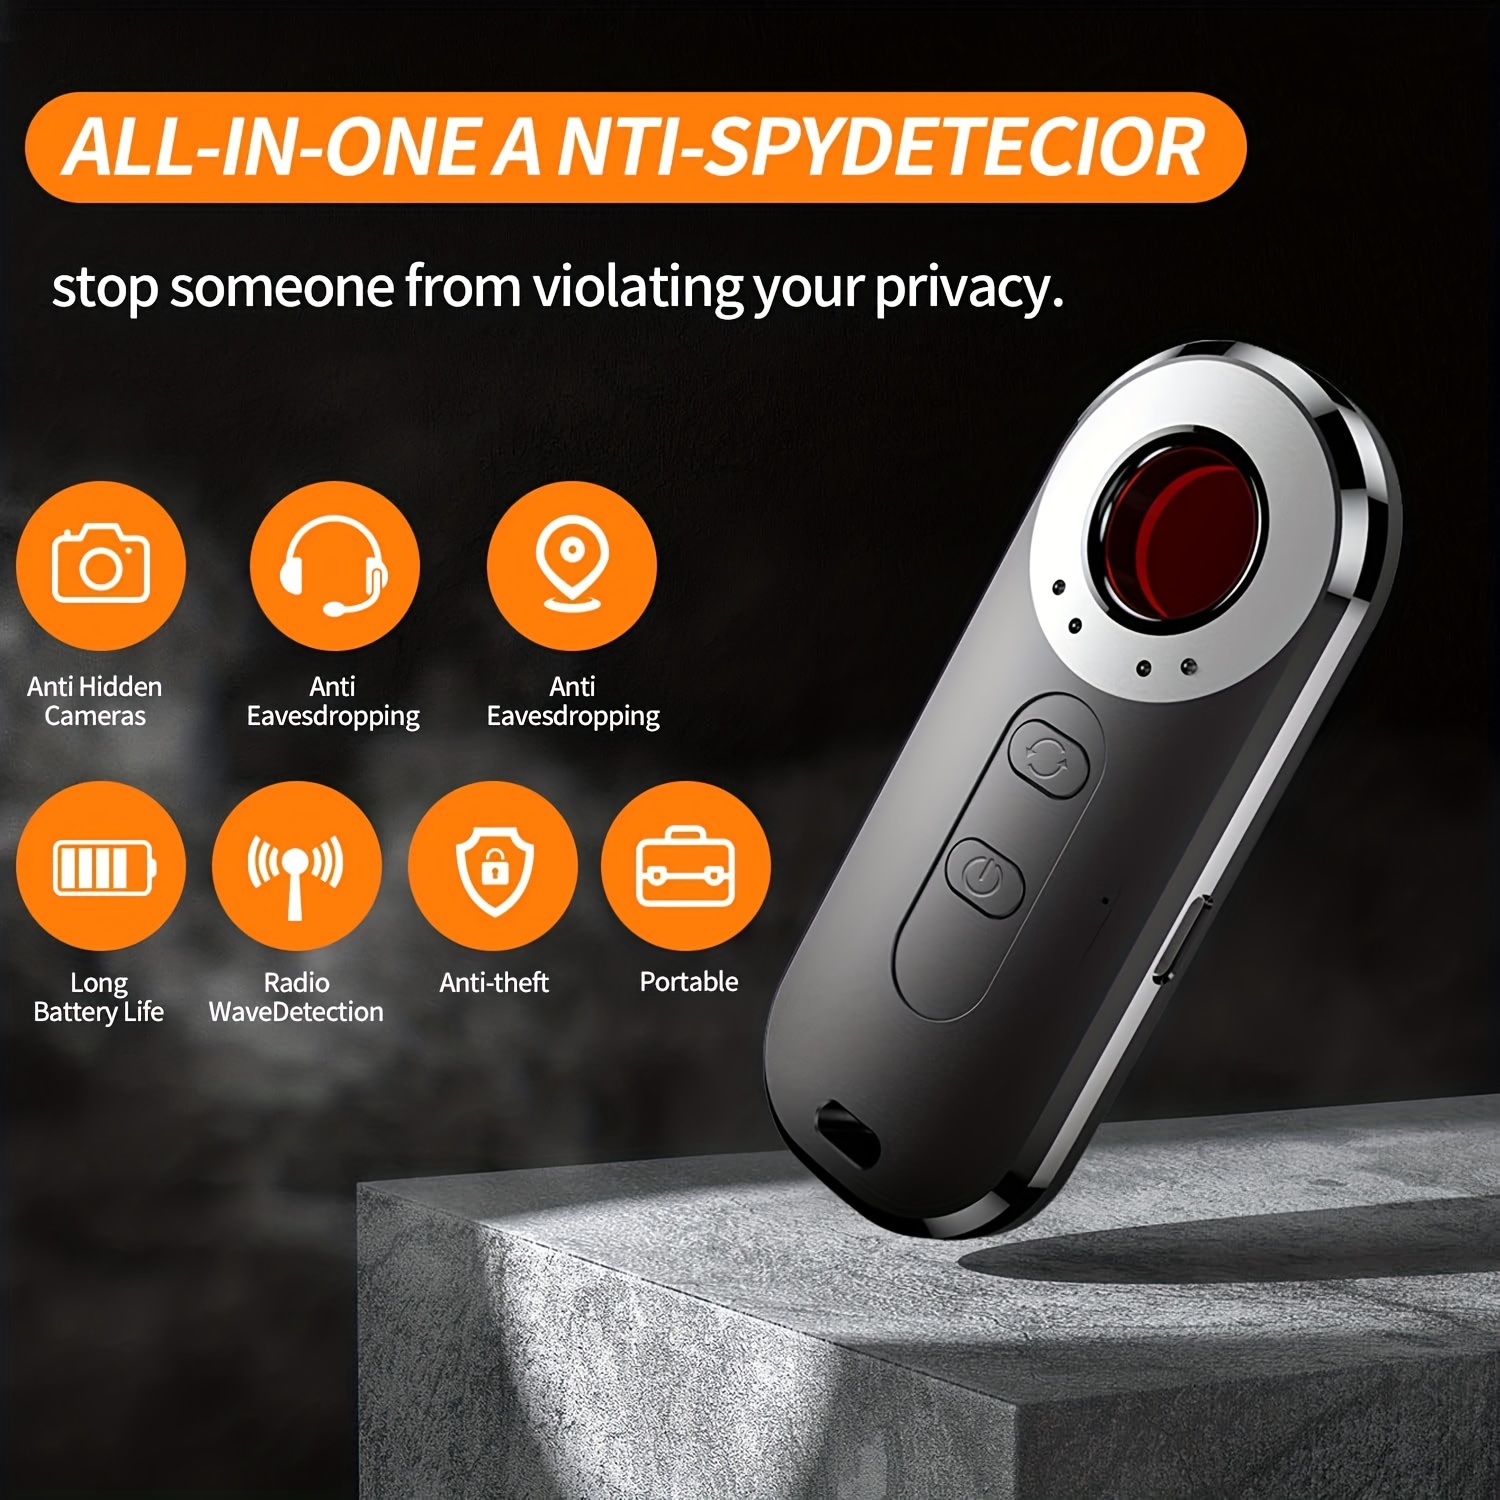 SpyFinder Pro, el detector de cámaras ocultas para descubrir quién te espía, TECNOLOGIA